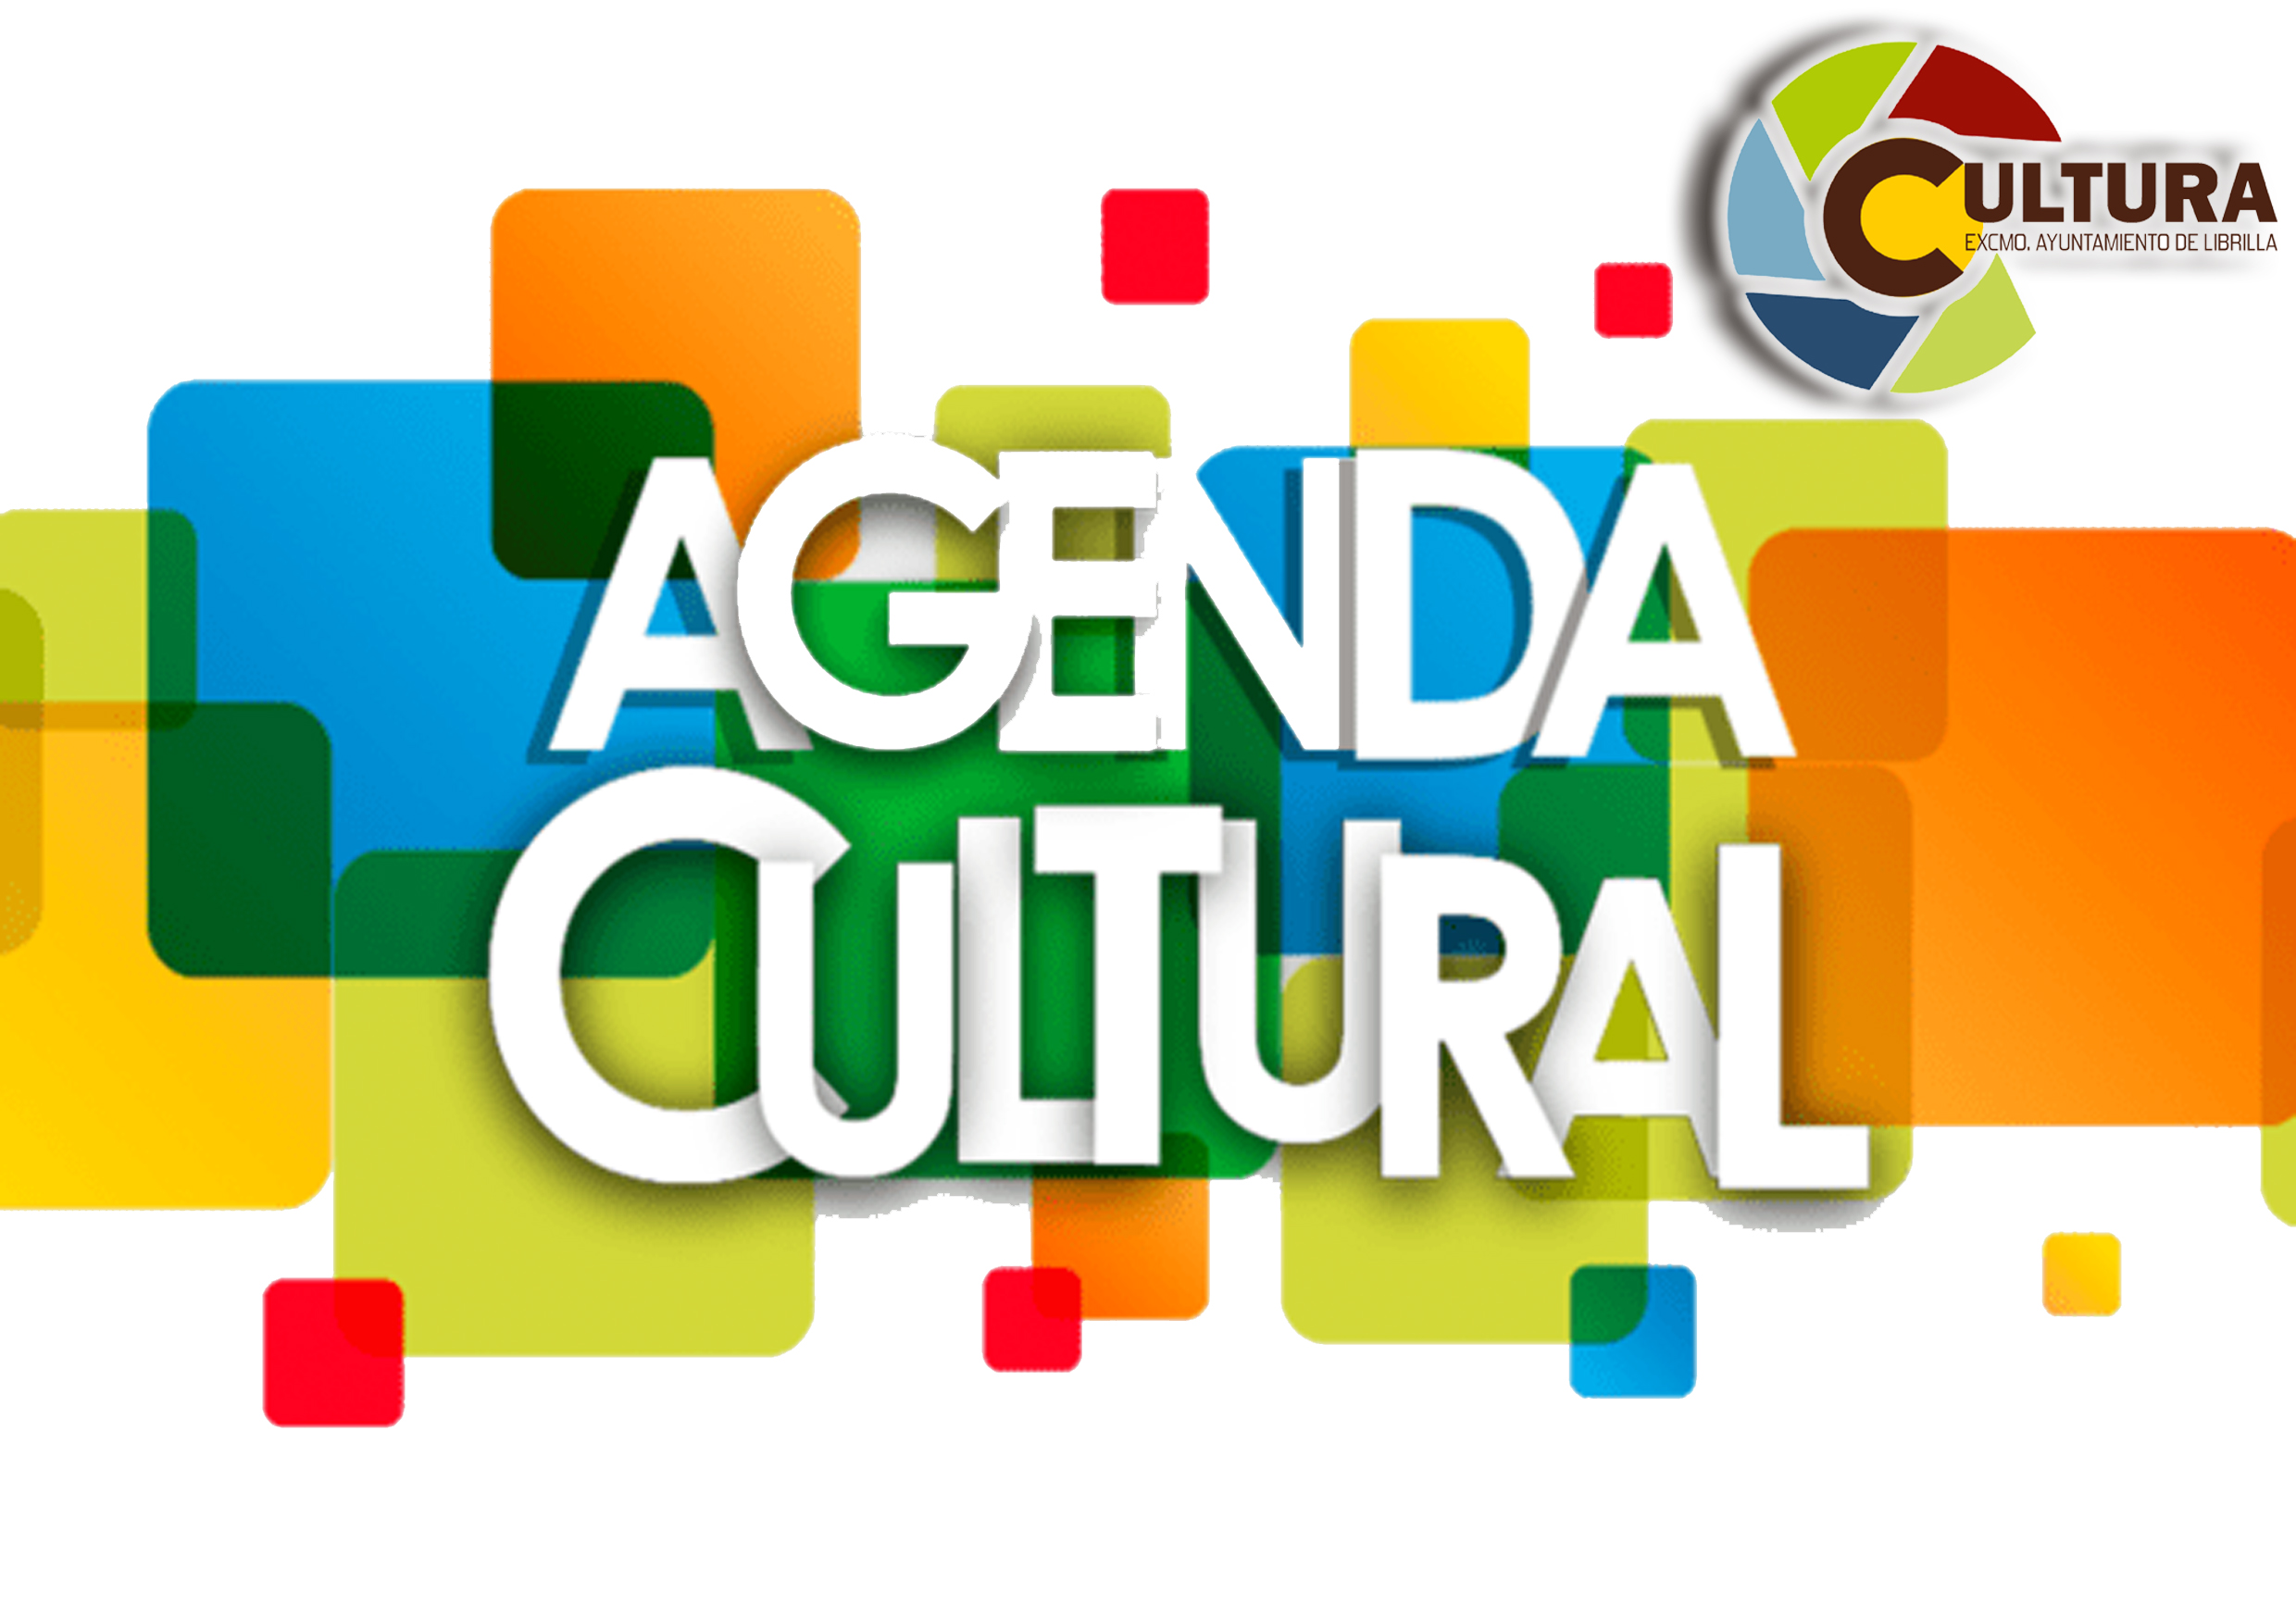 Agenda Cultural . Sale del sitio www.librilla.es  